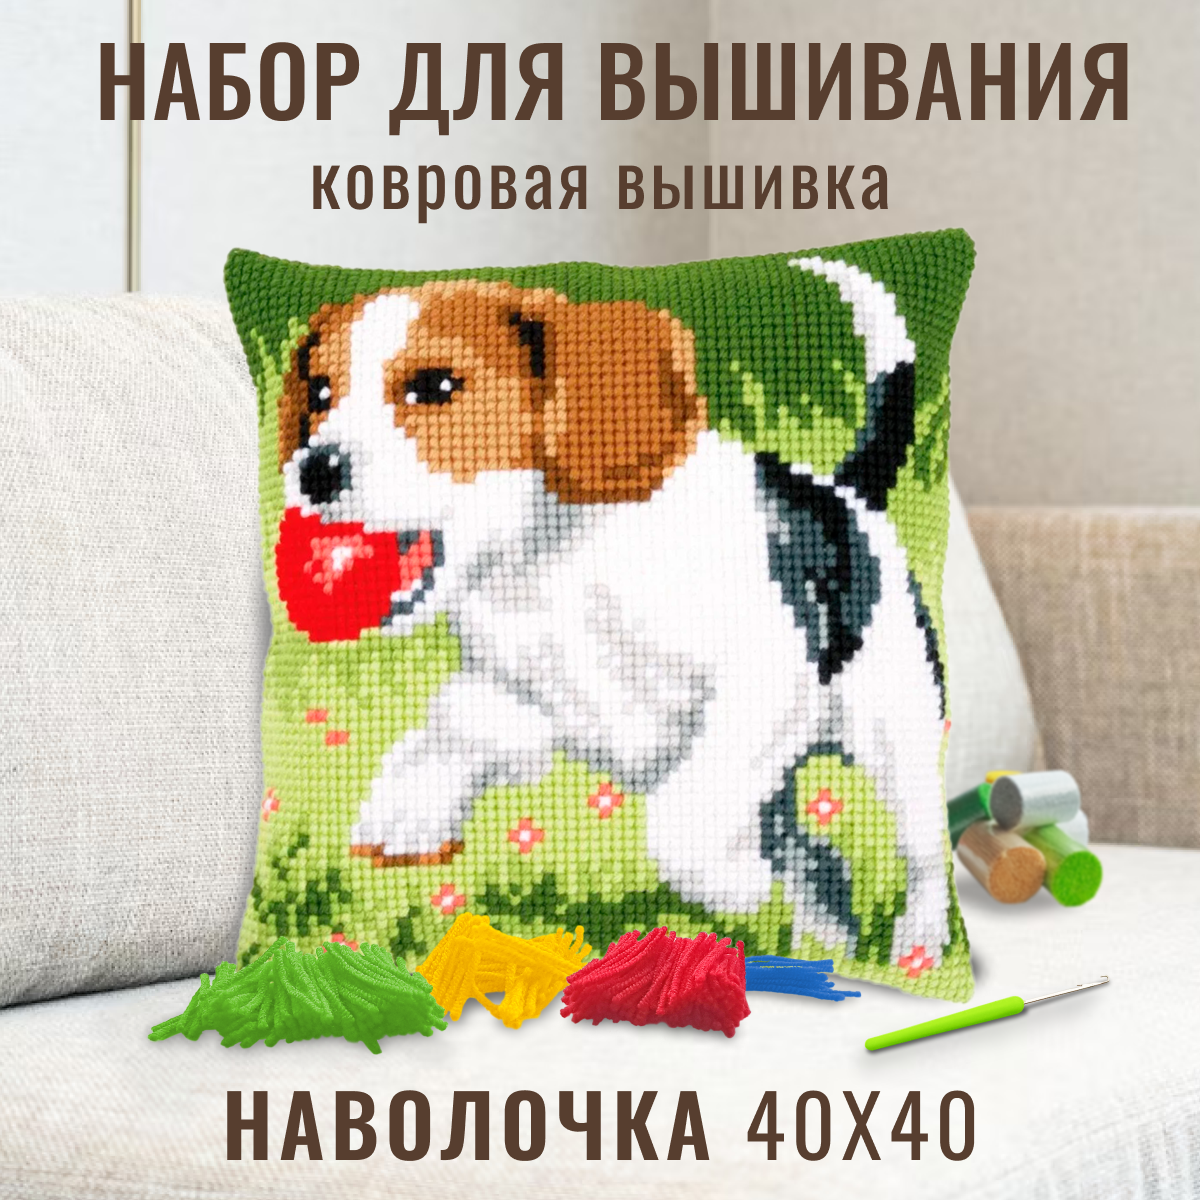 Ковровая вышивка. Набор для вышивания подушка размером 40х40 (ковровая техника) ZD-1218 Собака с мячом